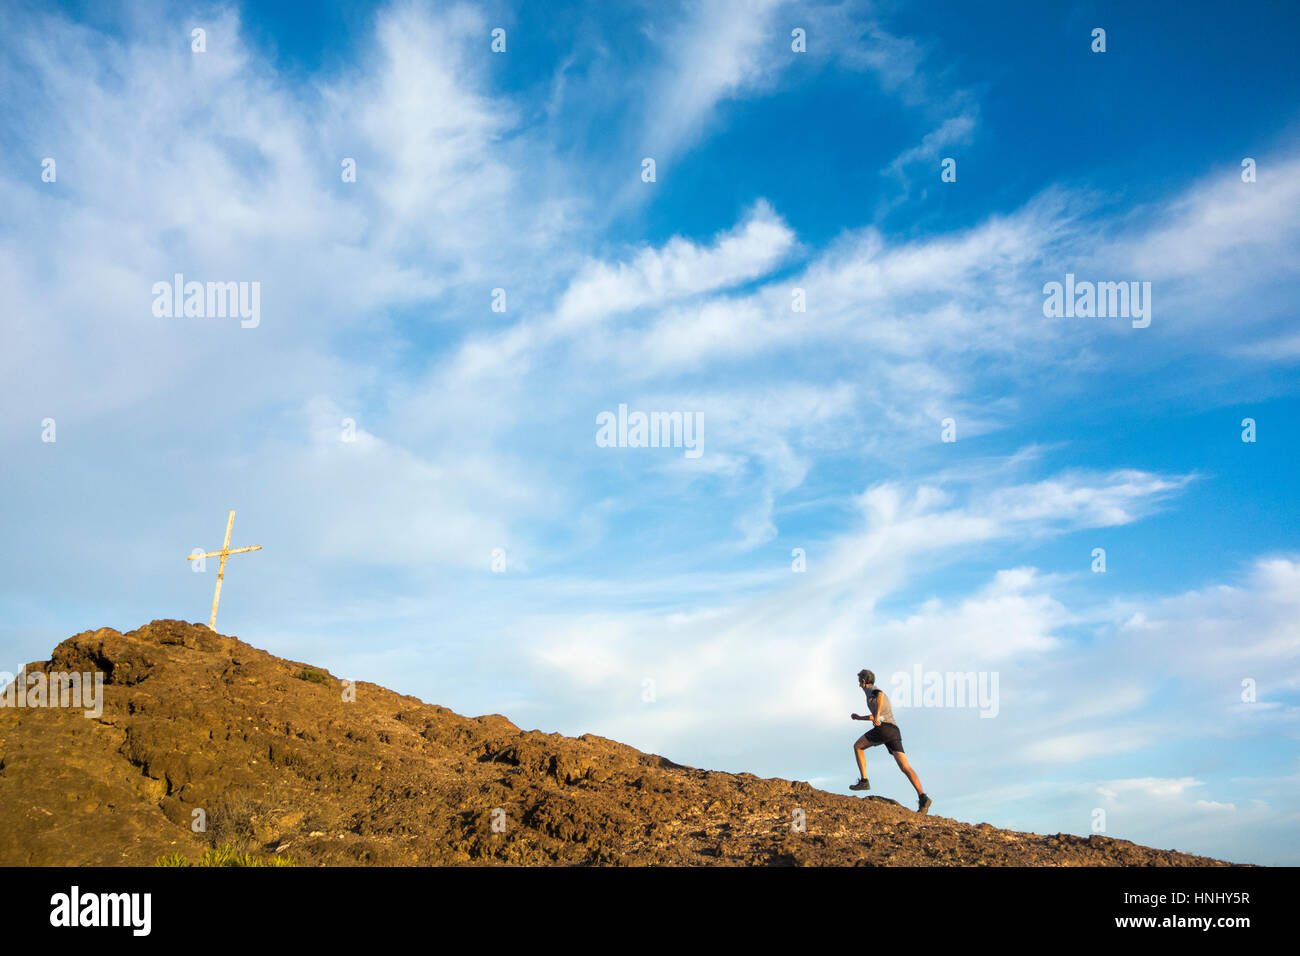 Trail runner running uphill on mountain summit Stock Photo